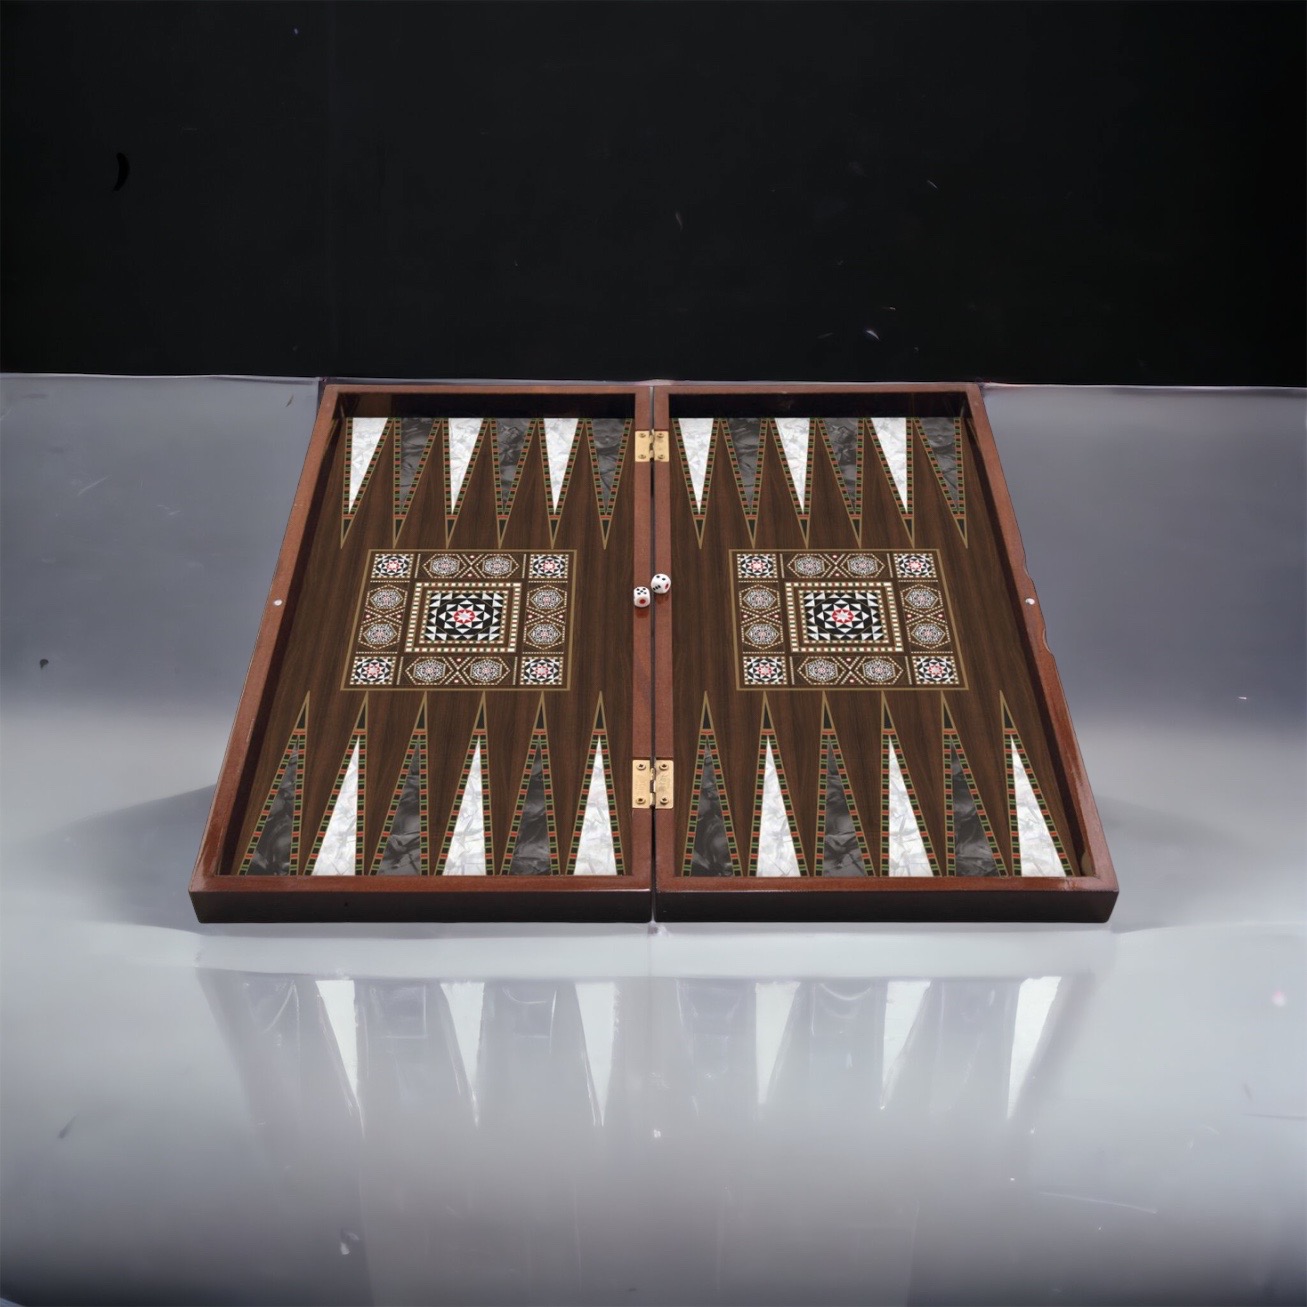 bestellen Sie noch heute Ihren Tavla - Tavli Backgammon Spielbrett